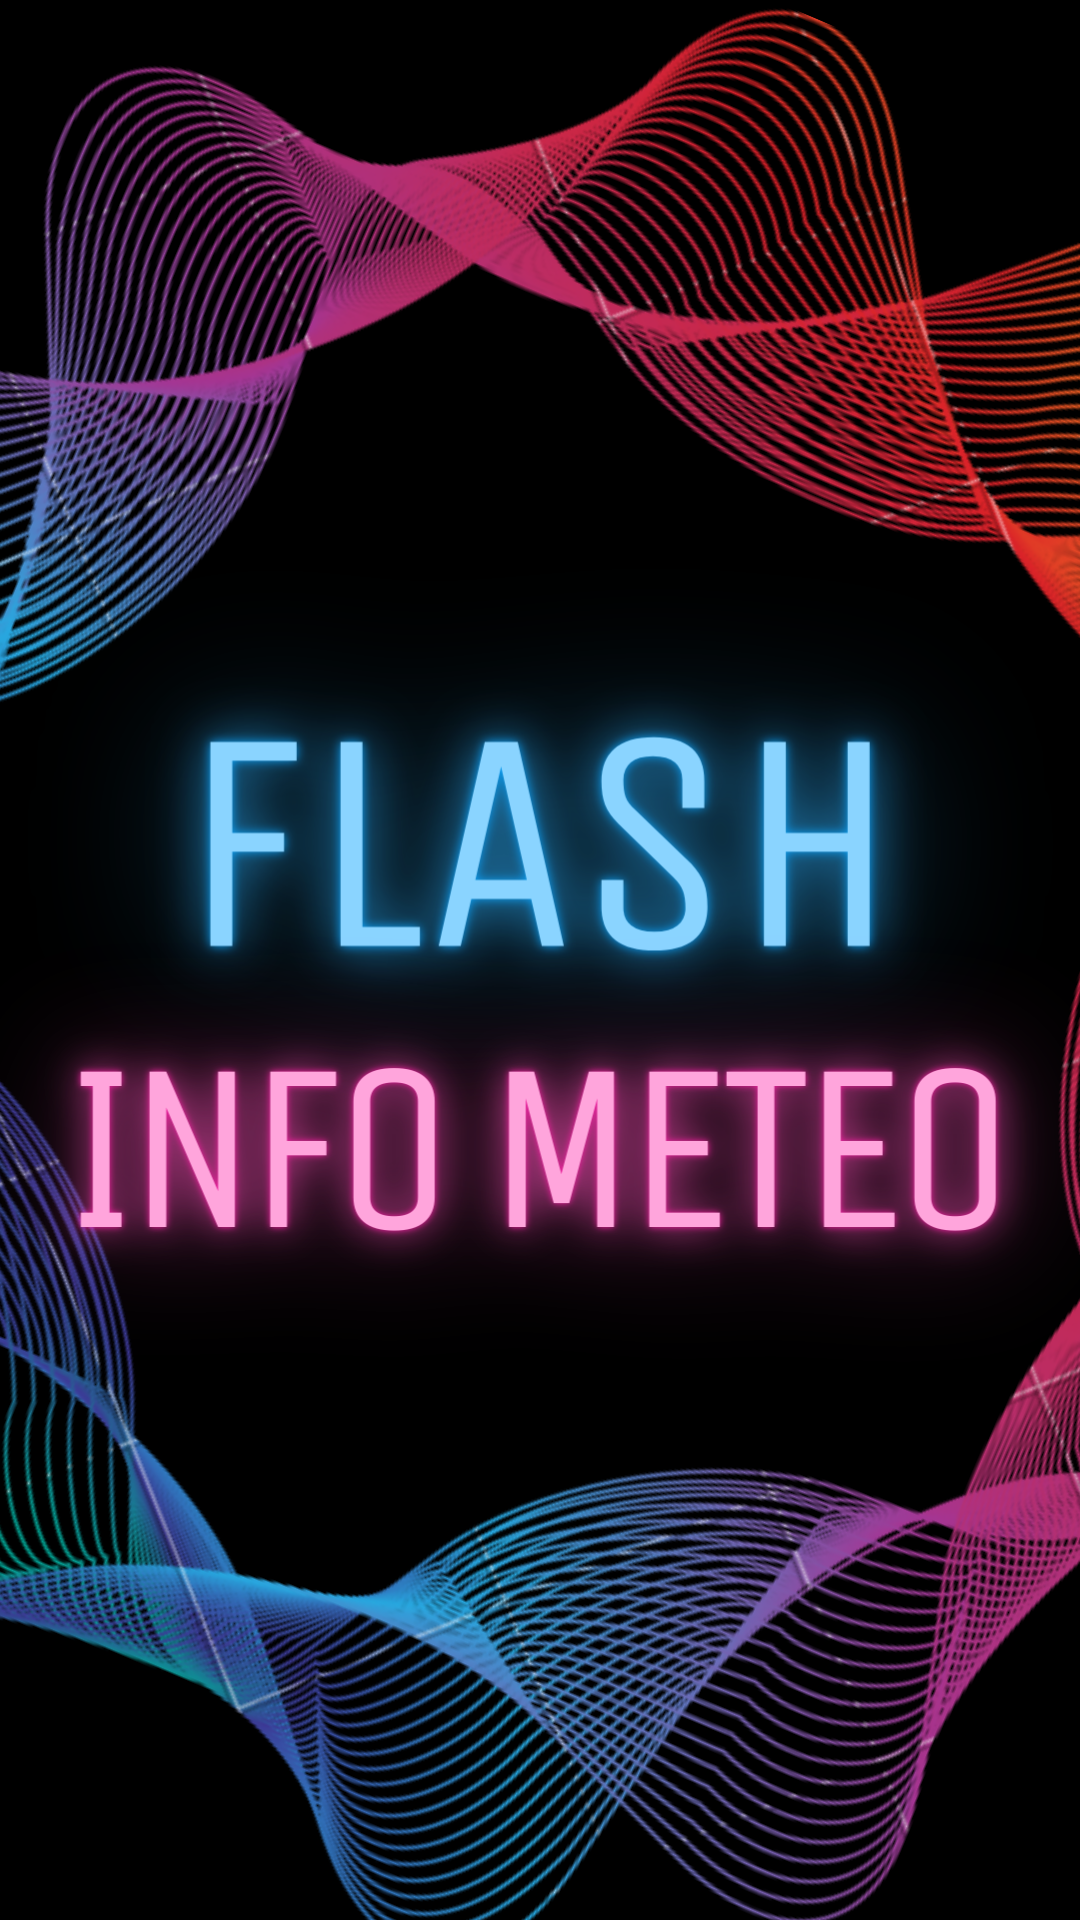 Flash Info Météo